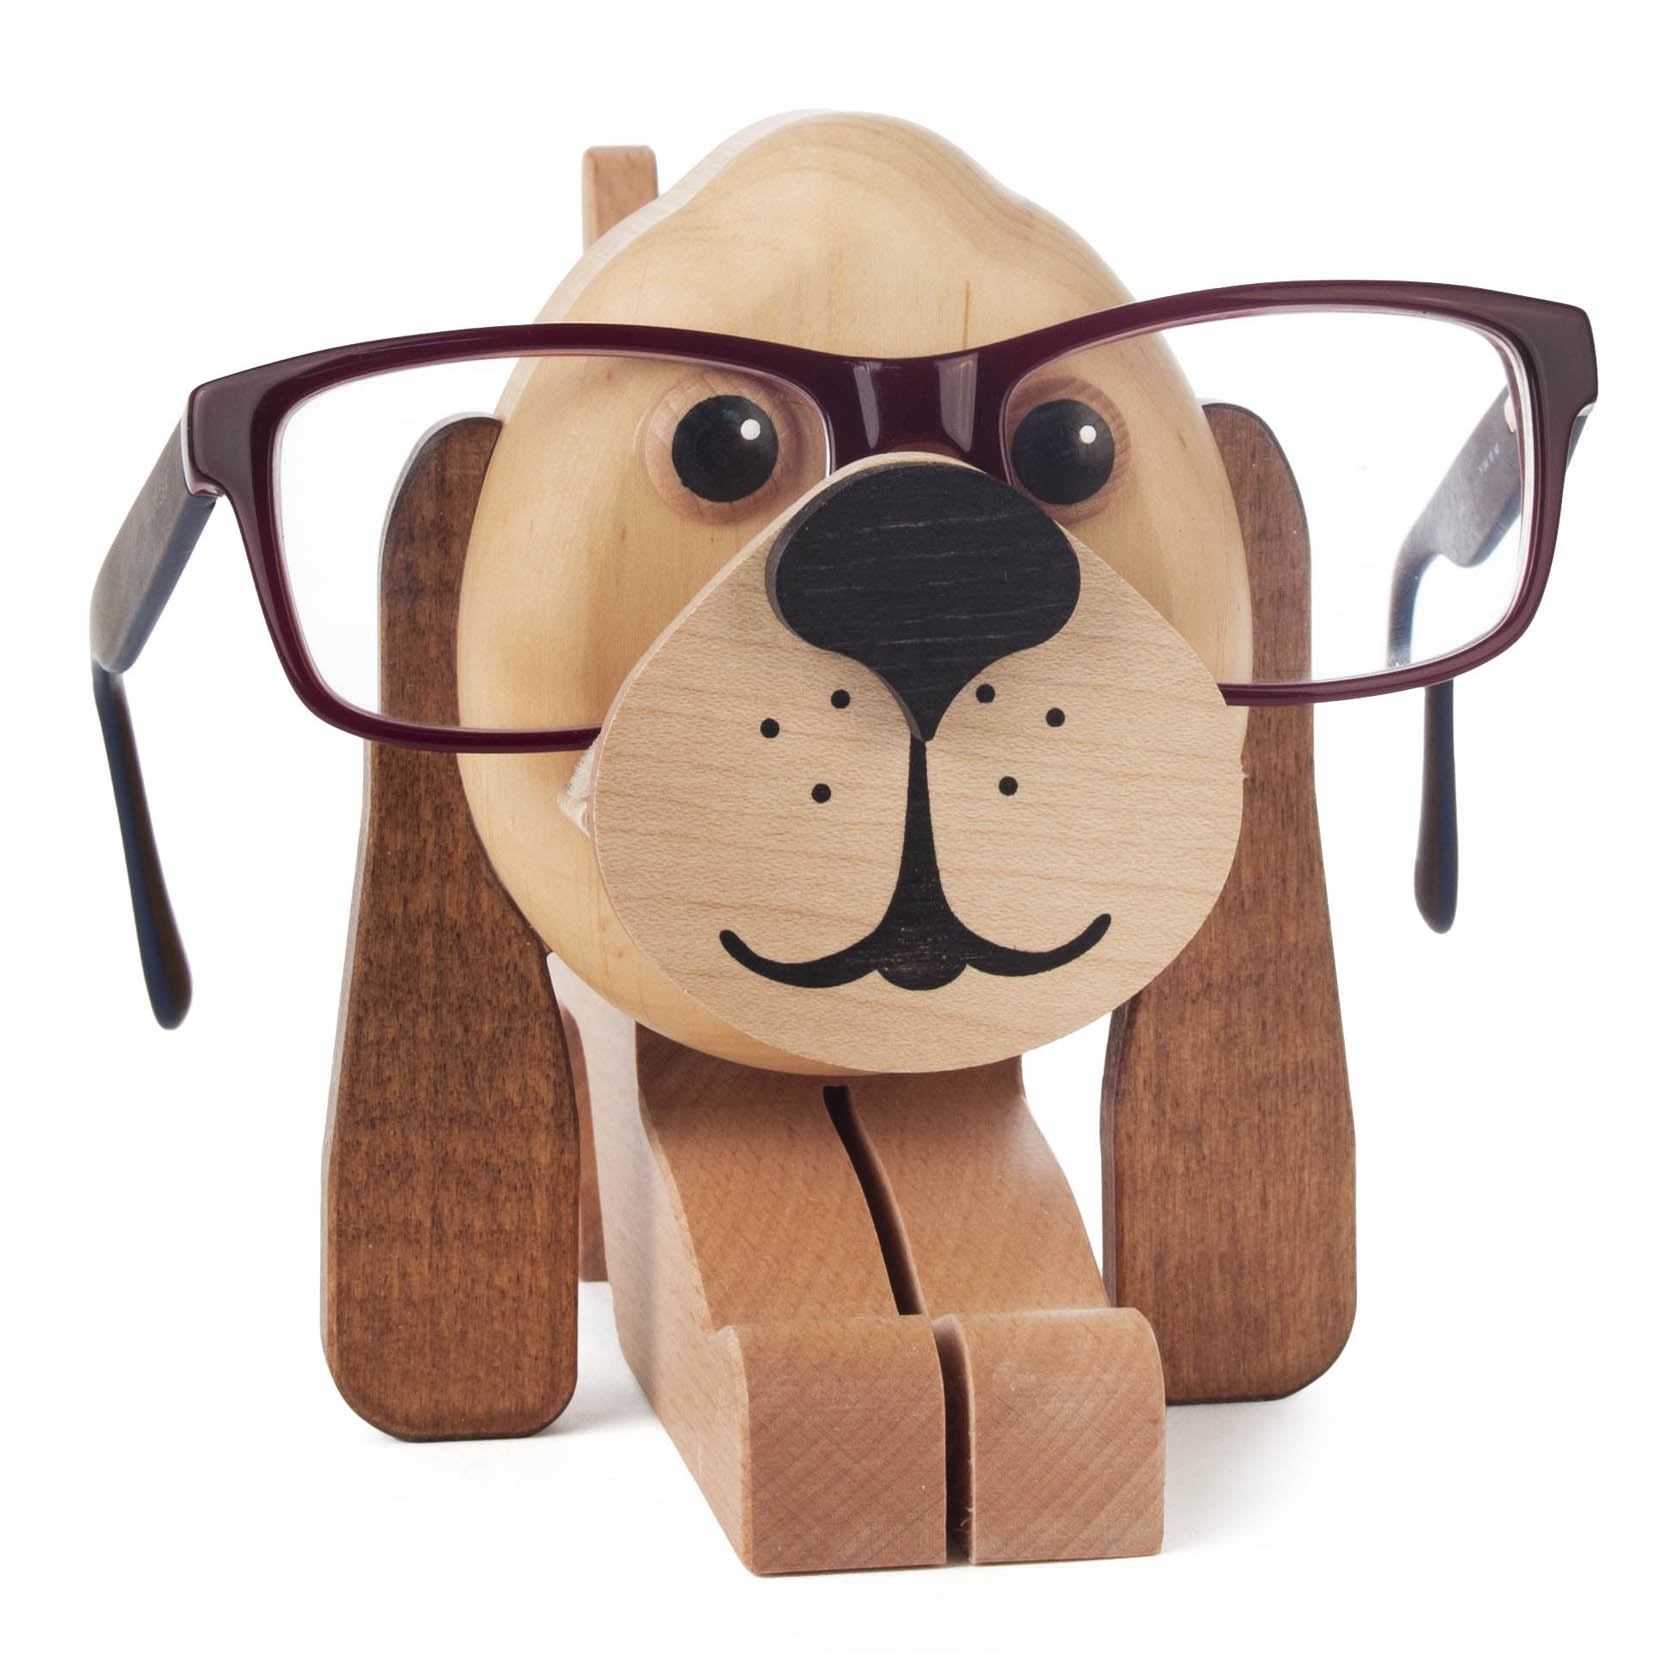 Brillenhalter Hund